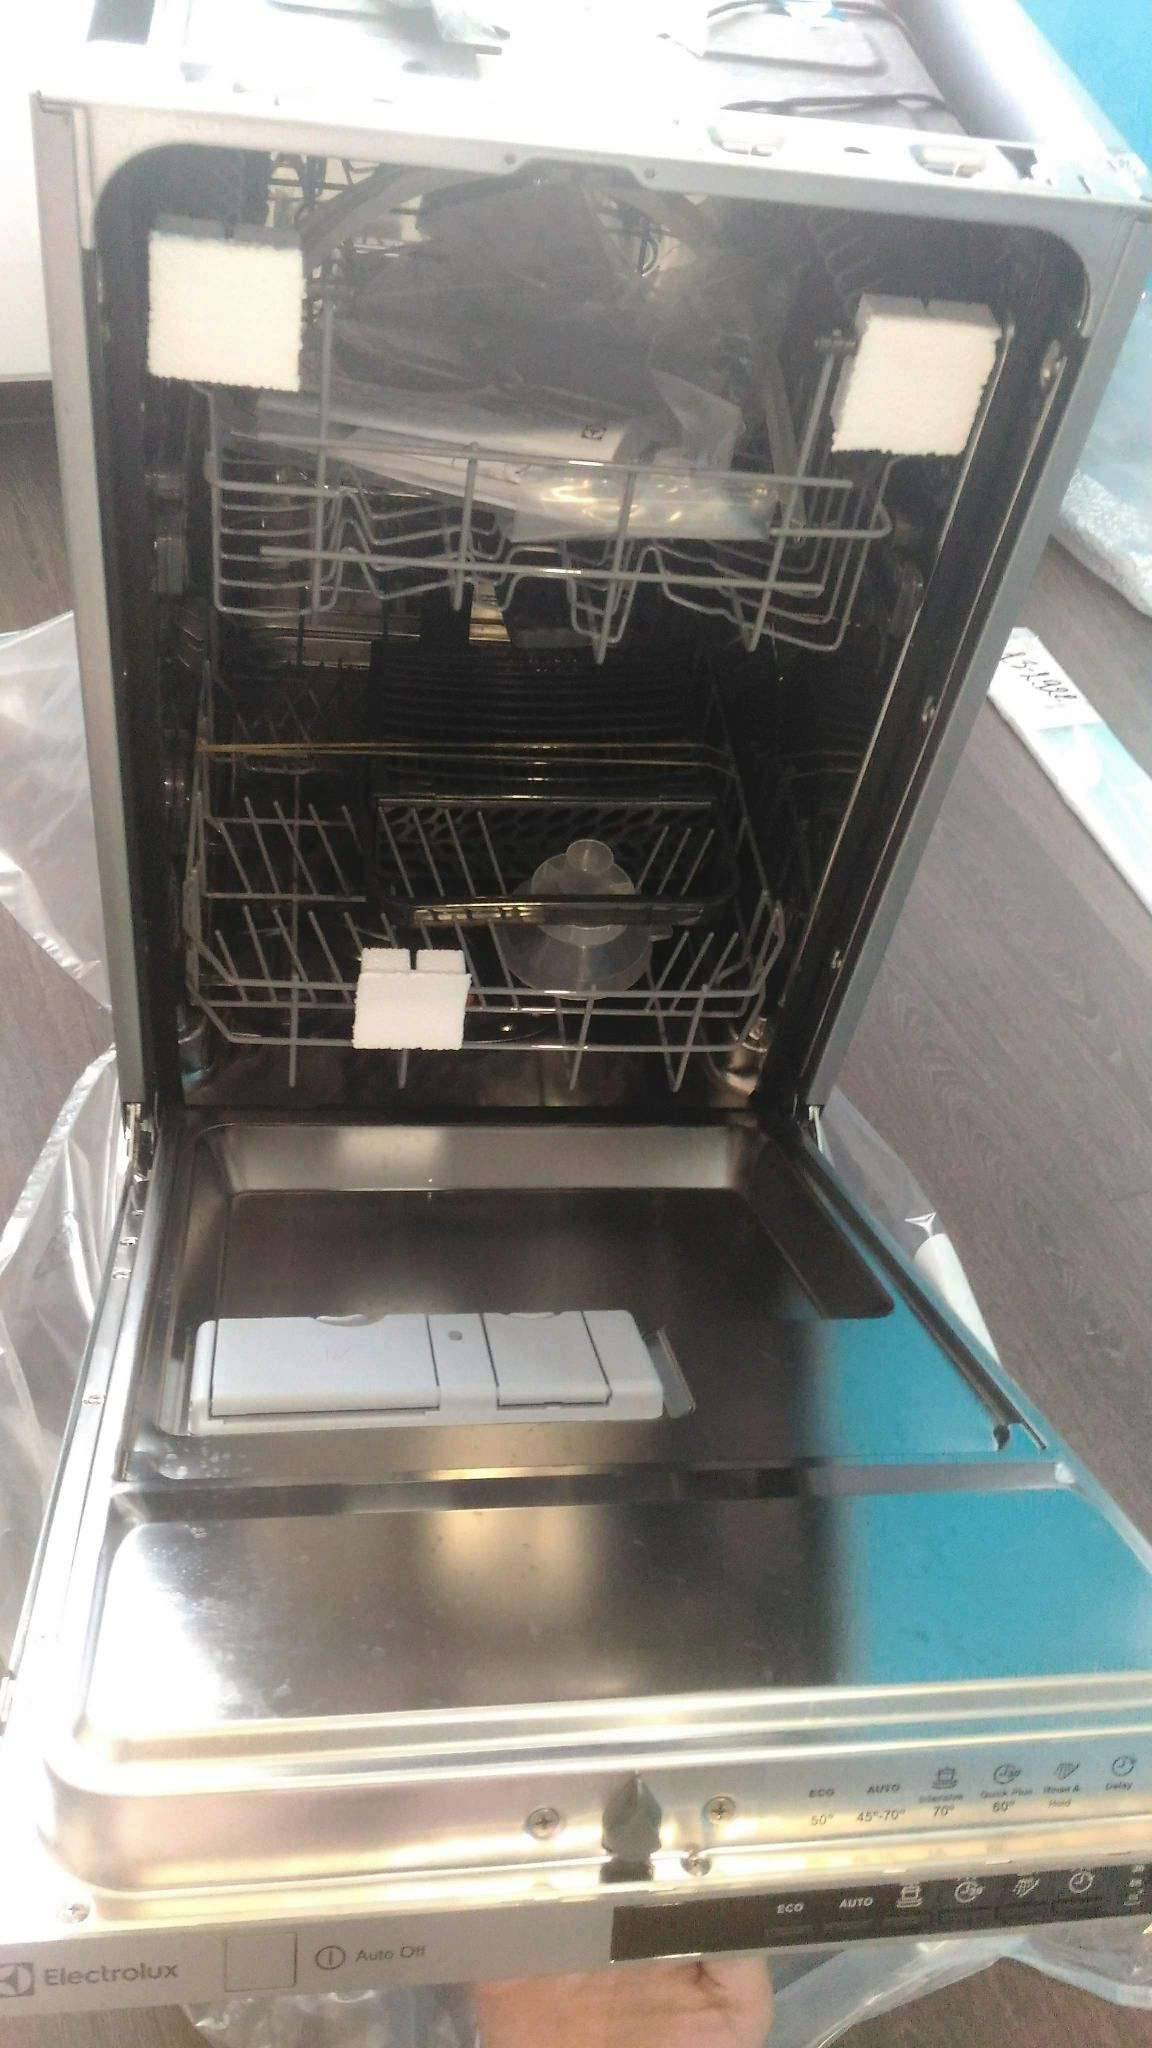 Как выбрать посудомоечную машину фирмы электролюкс? 5 лучших моделей!